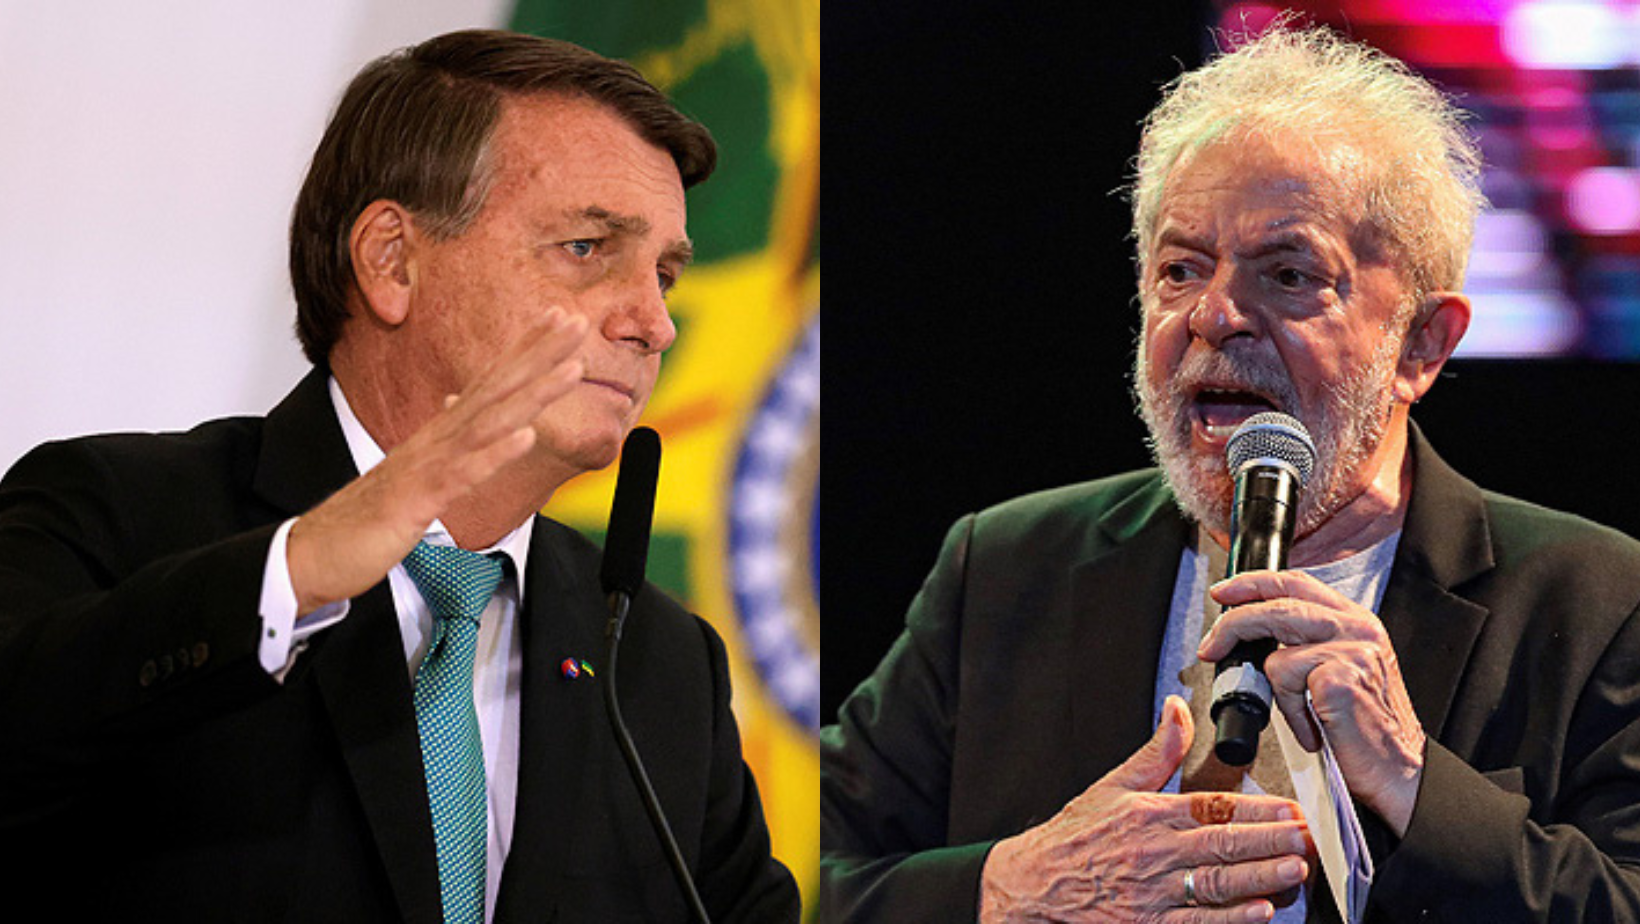 Analista por gallito entre Lula y Bolsonaro: “Por muy arriba que esté Lula sigue siendo un escenario abierto y muy desafiante para sus ideólogos”